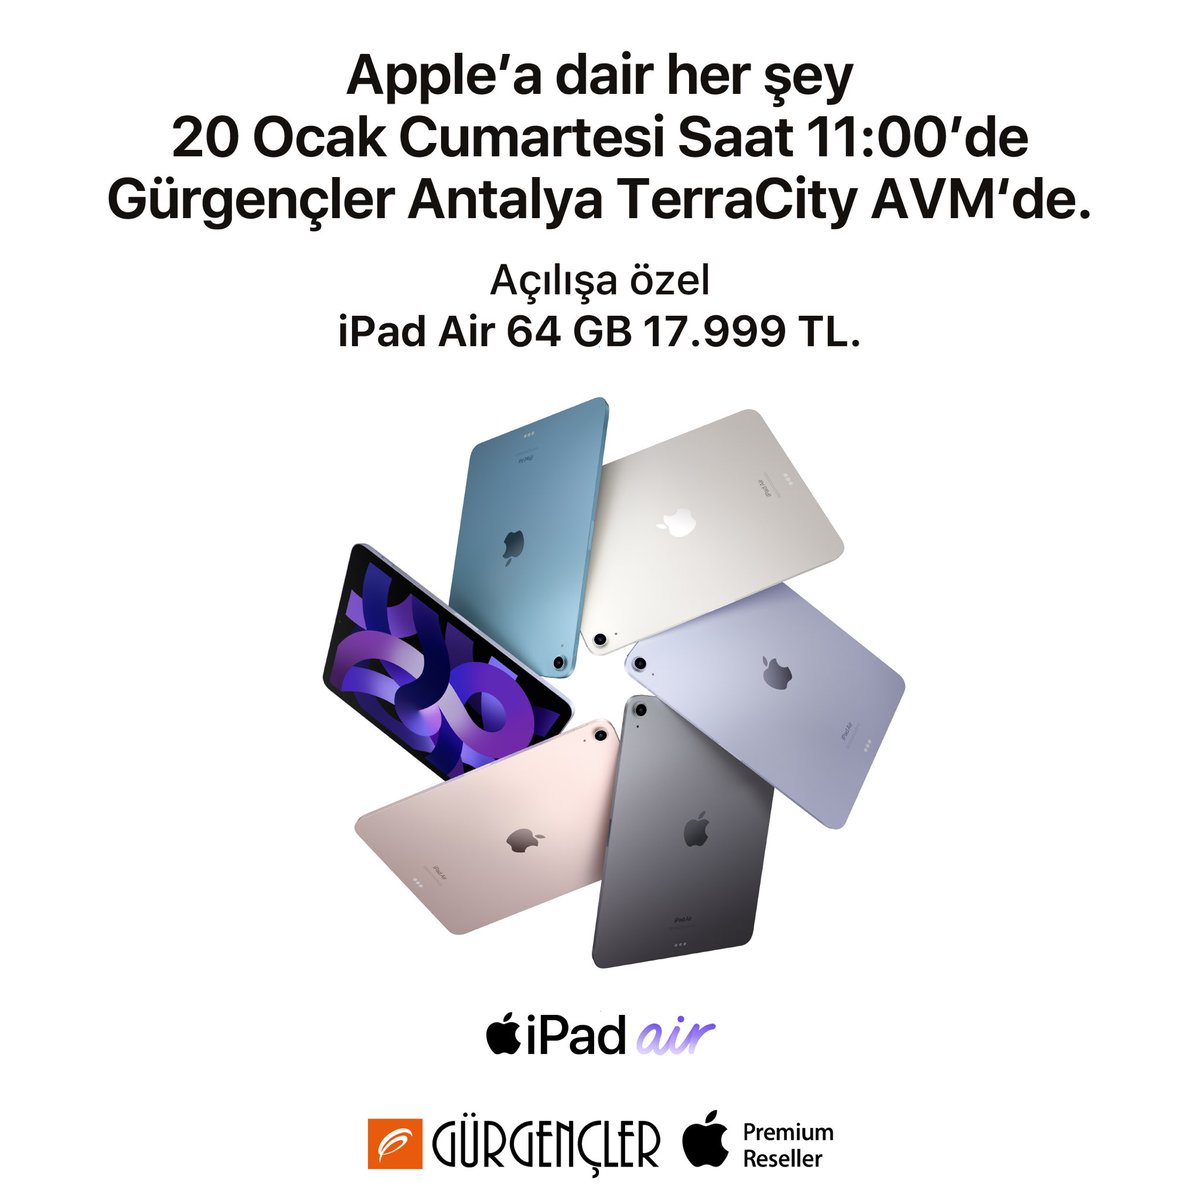 20 Ocak Cumartesi Antalya TerraCity AVM Apple Premium Reseller mağazamızın büyük açılışına özel, iPad Air 64 GB 17.999 TL. 🤩 Detaylı bilgi için: gurgencler.com.tr/antalyaterraci…   #Apple #Gürgençler #Antalya #TerraCityAVM #ApplePremiumReseller #BüyükAçılış #iPad